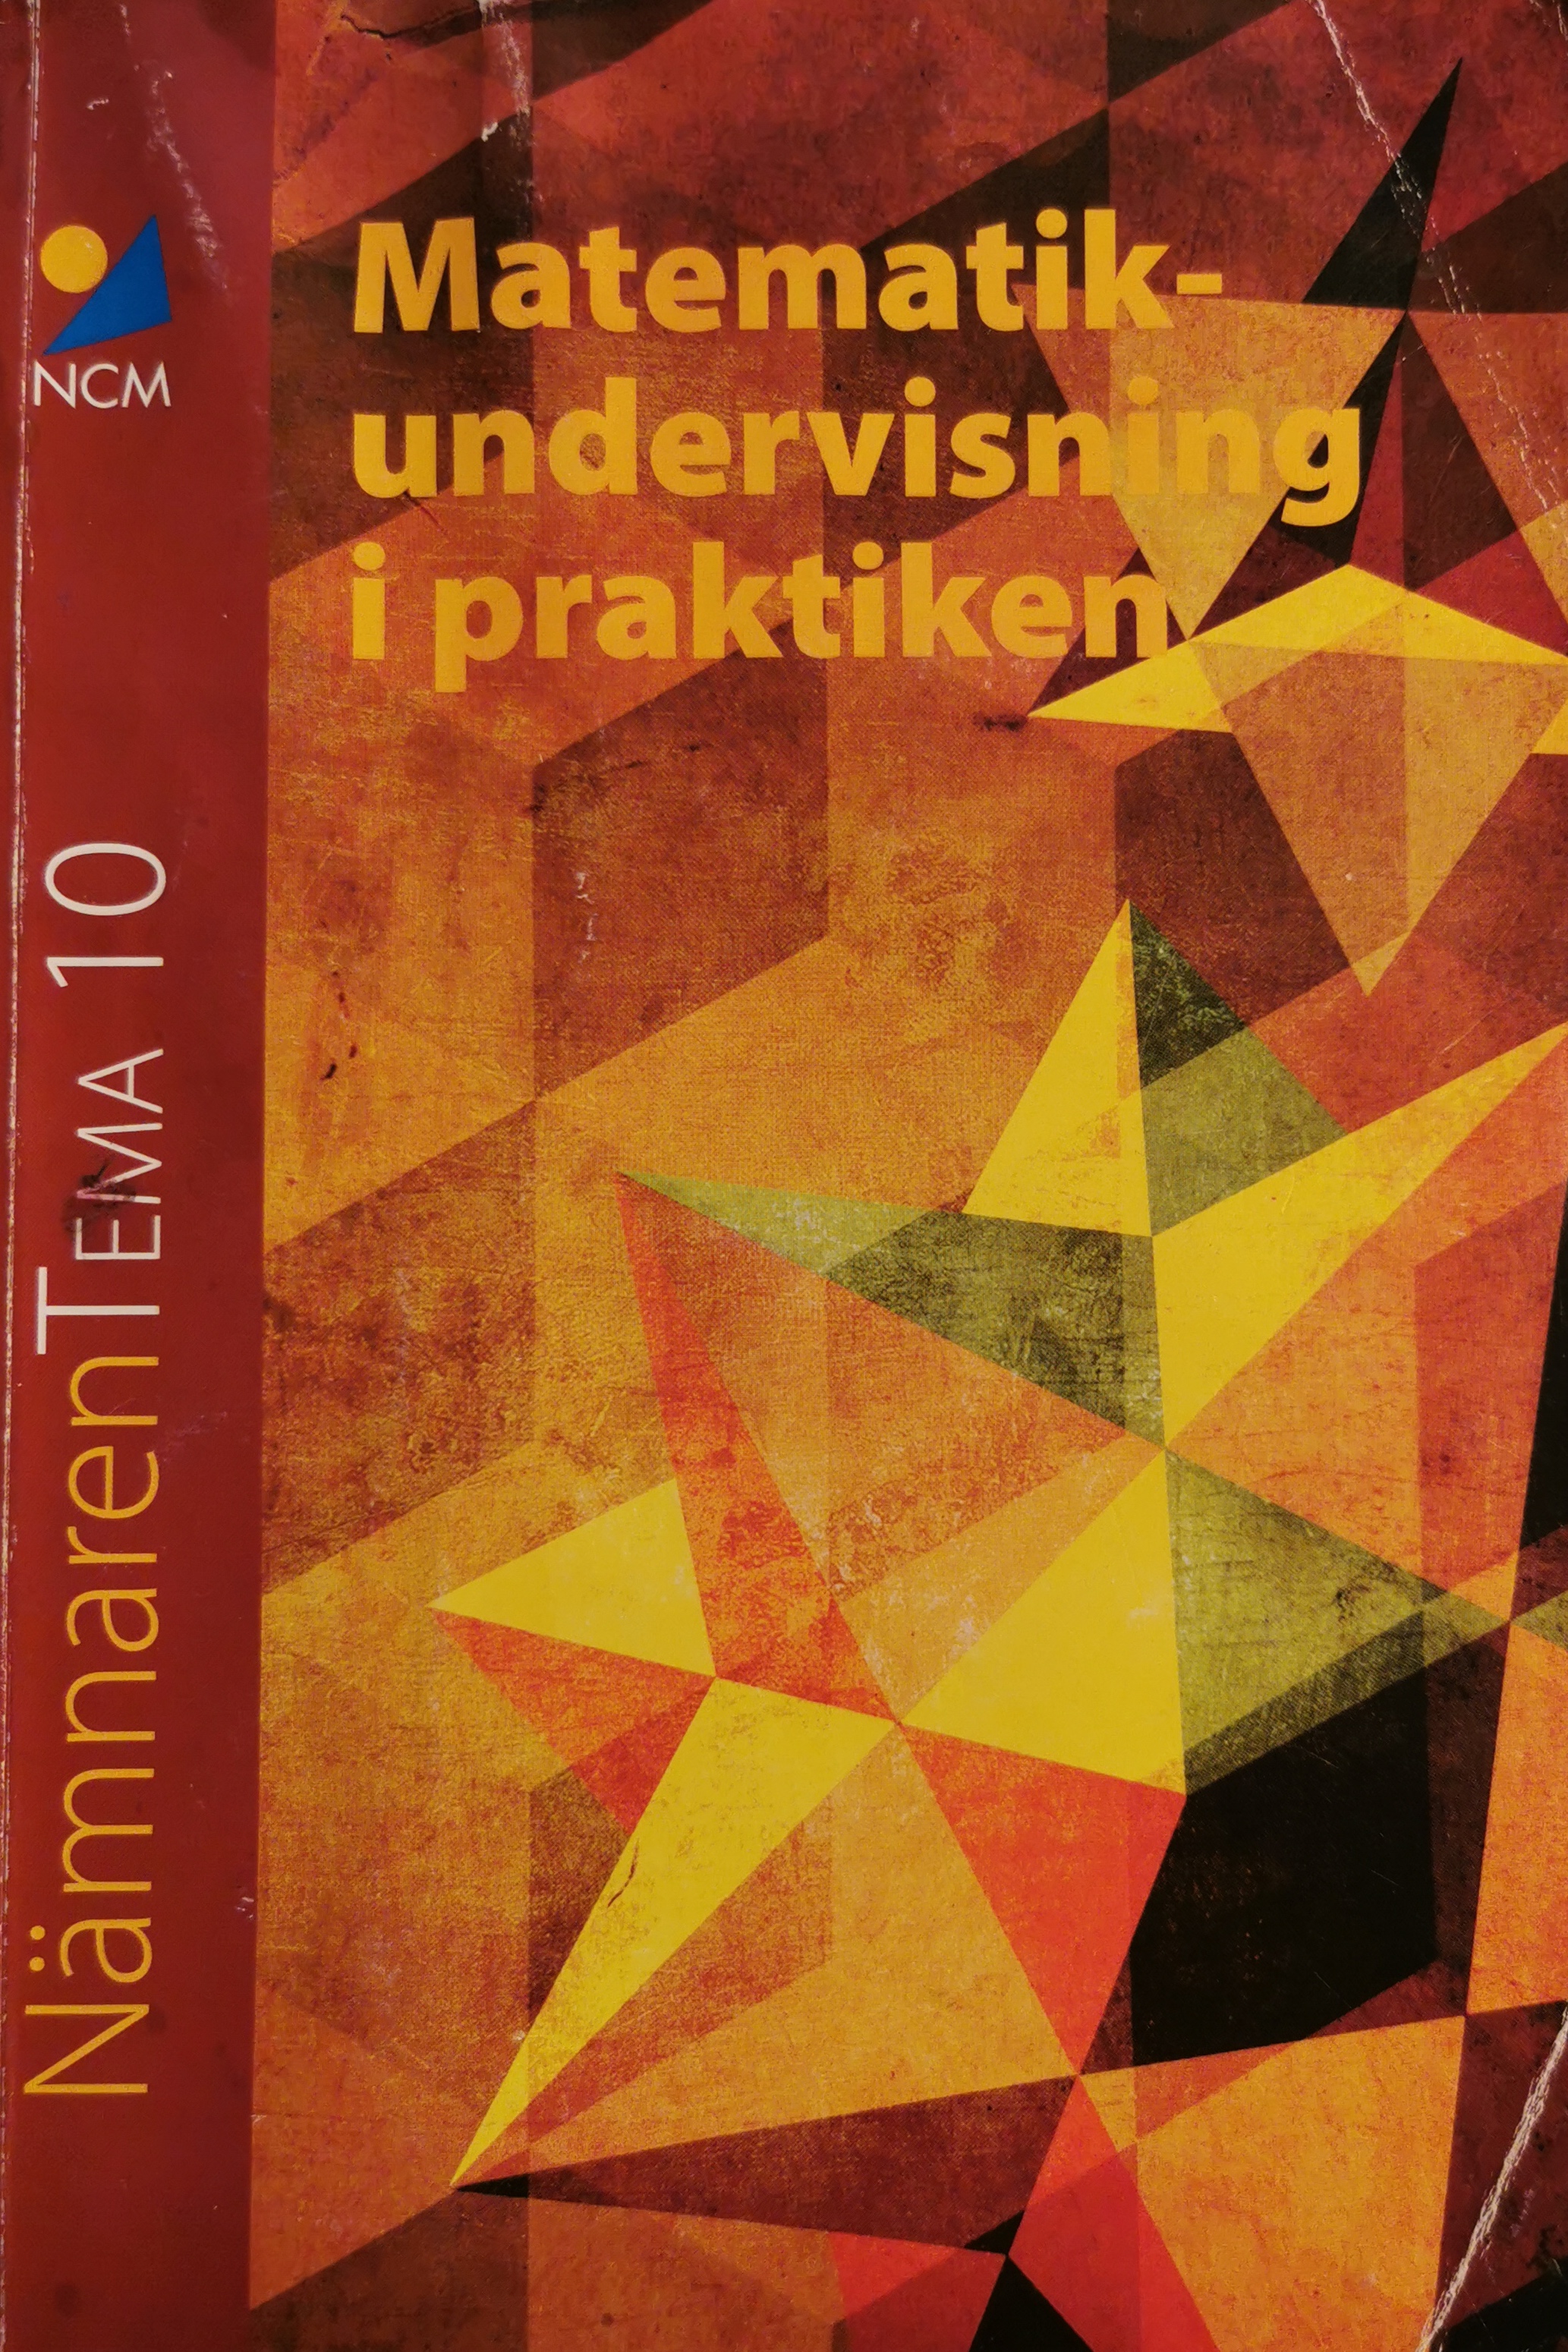 Matematikundervisning i praktiken; Karin Wallby M F; 2014